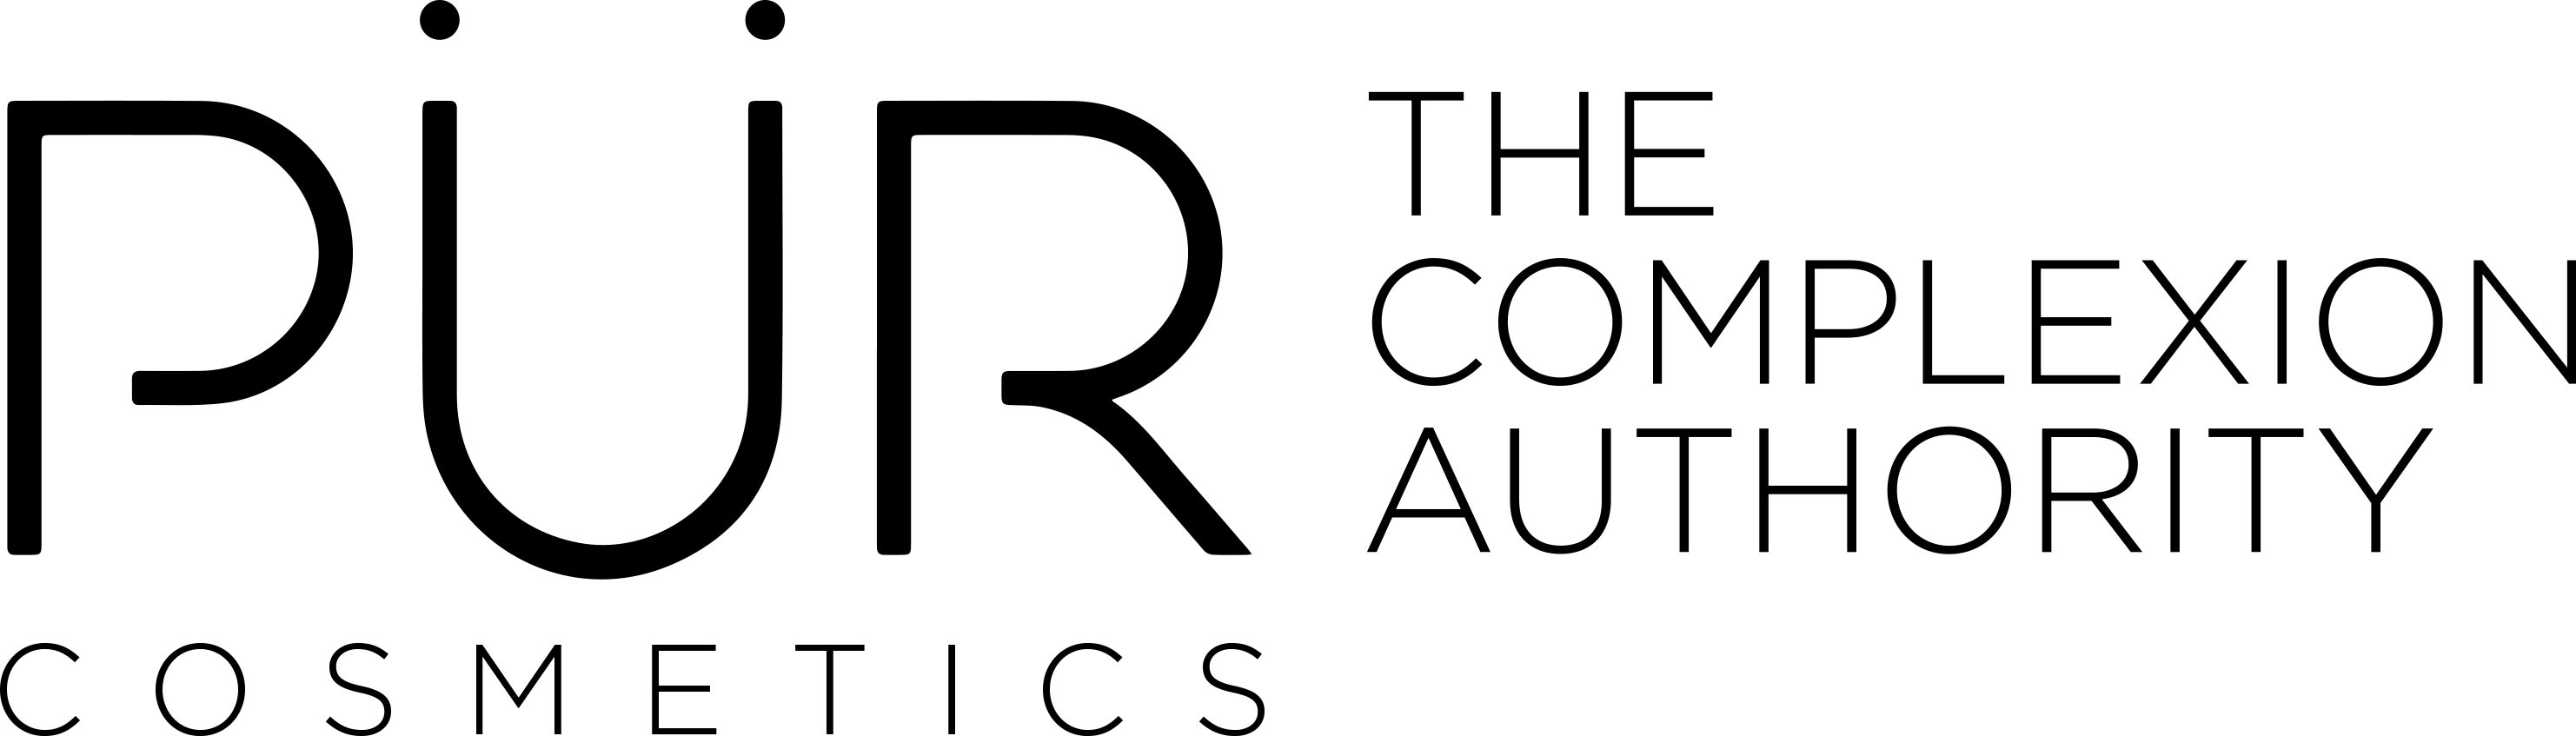 Trademark Logo PÃR COSMETICS THE COMPLEXION AUTHORITY